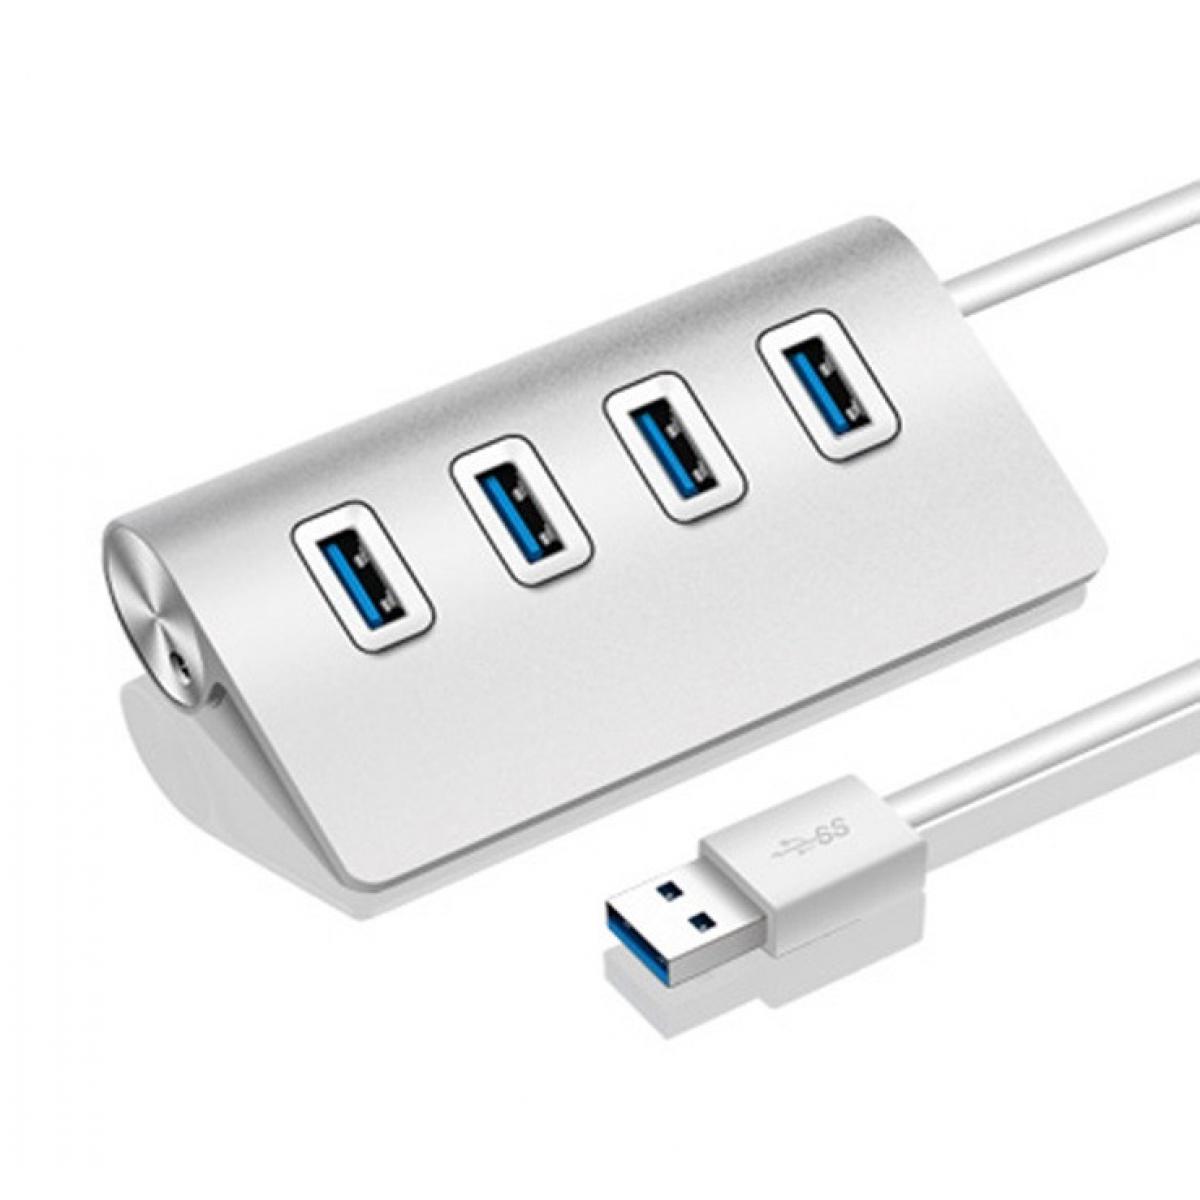 Shot - Hub Metal 4 ports USB 2.0 pour PC iMAC APPLE Multi-prises Adaptateur Rallonge (ARGENT) - Hub